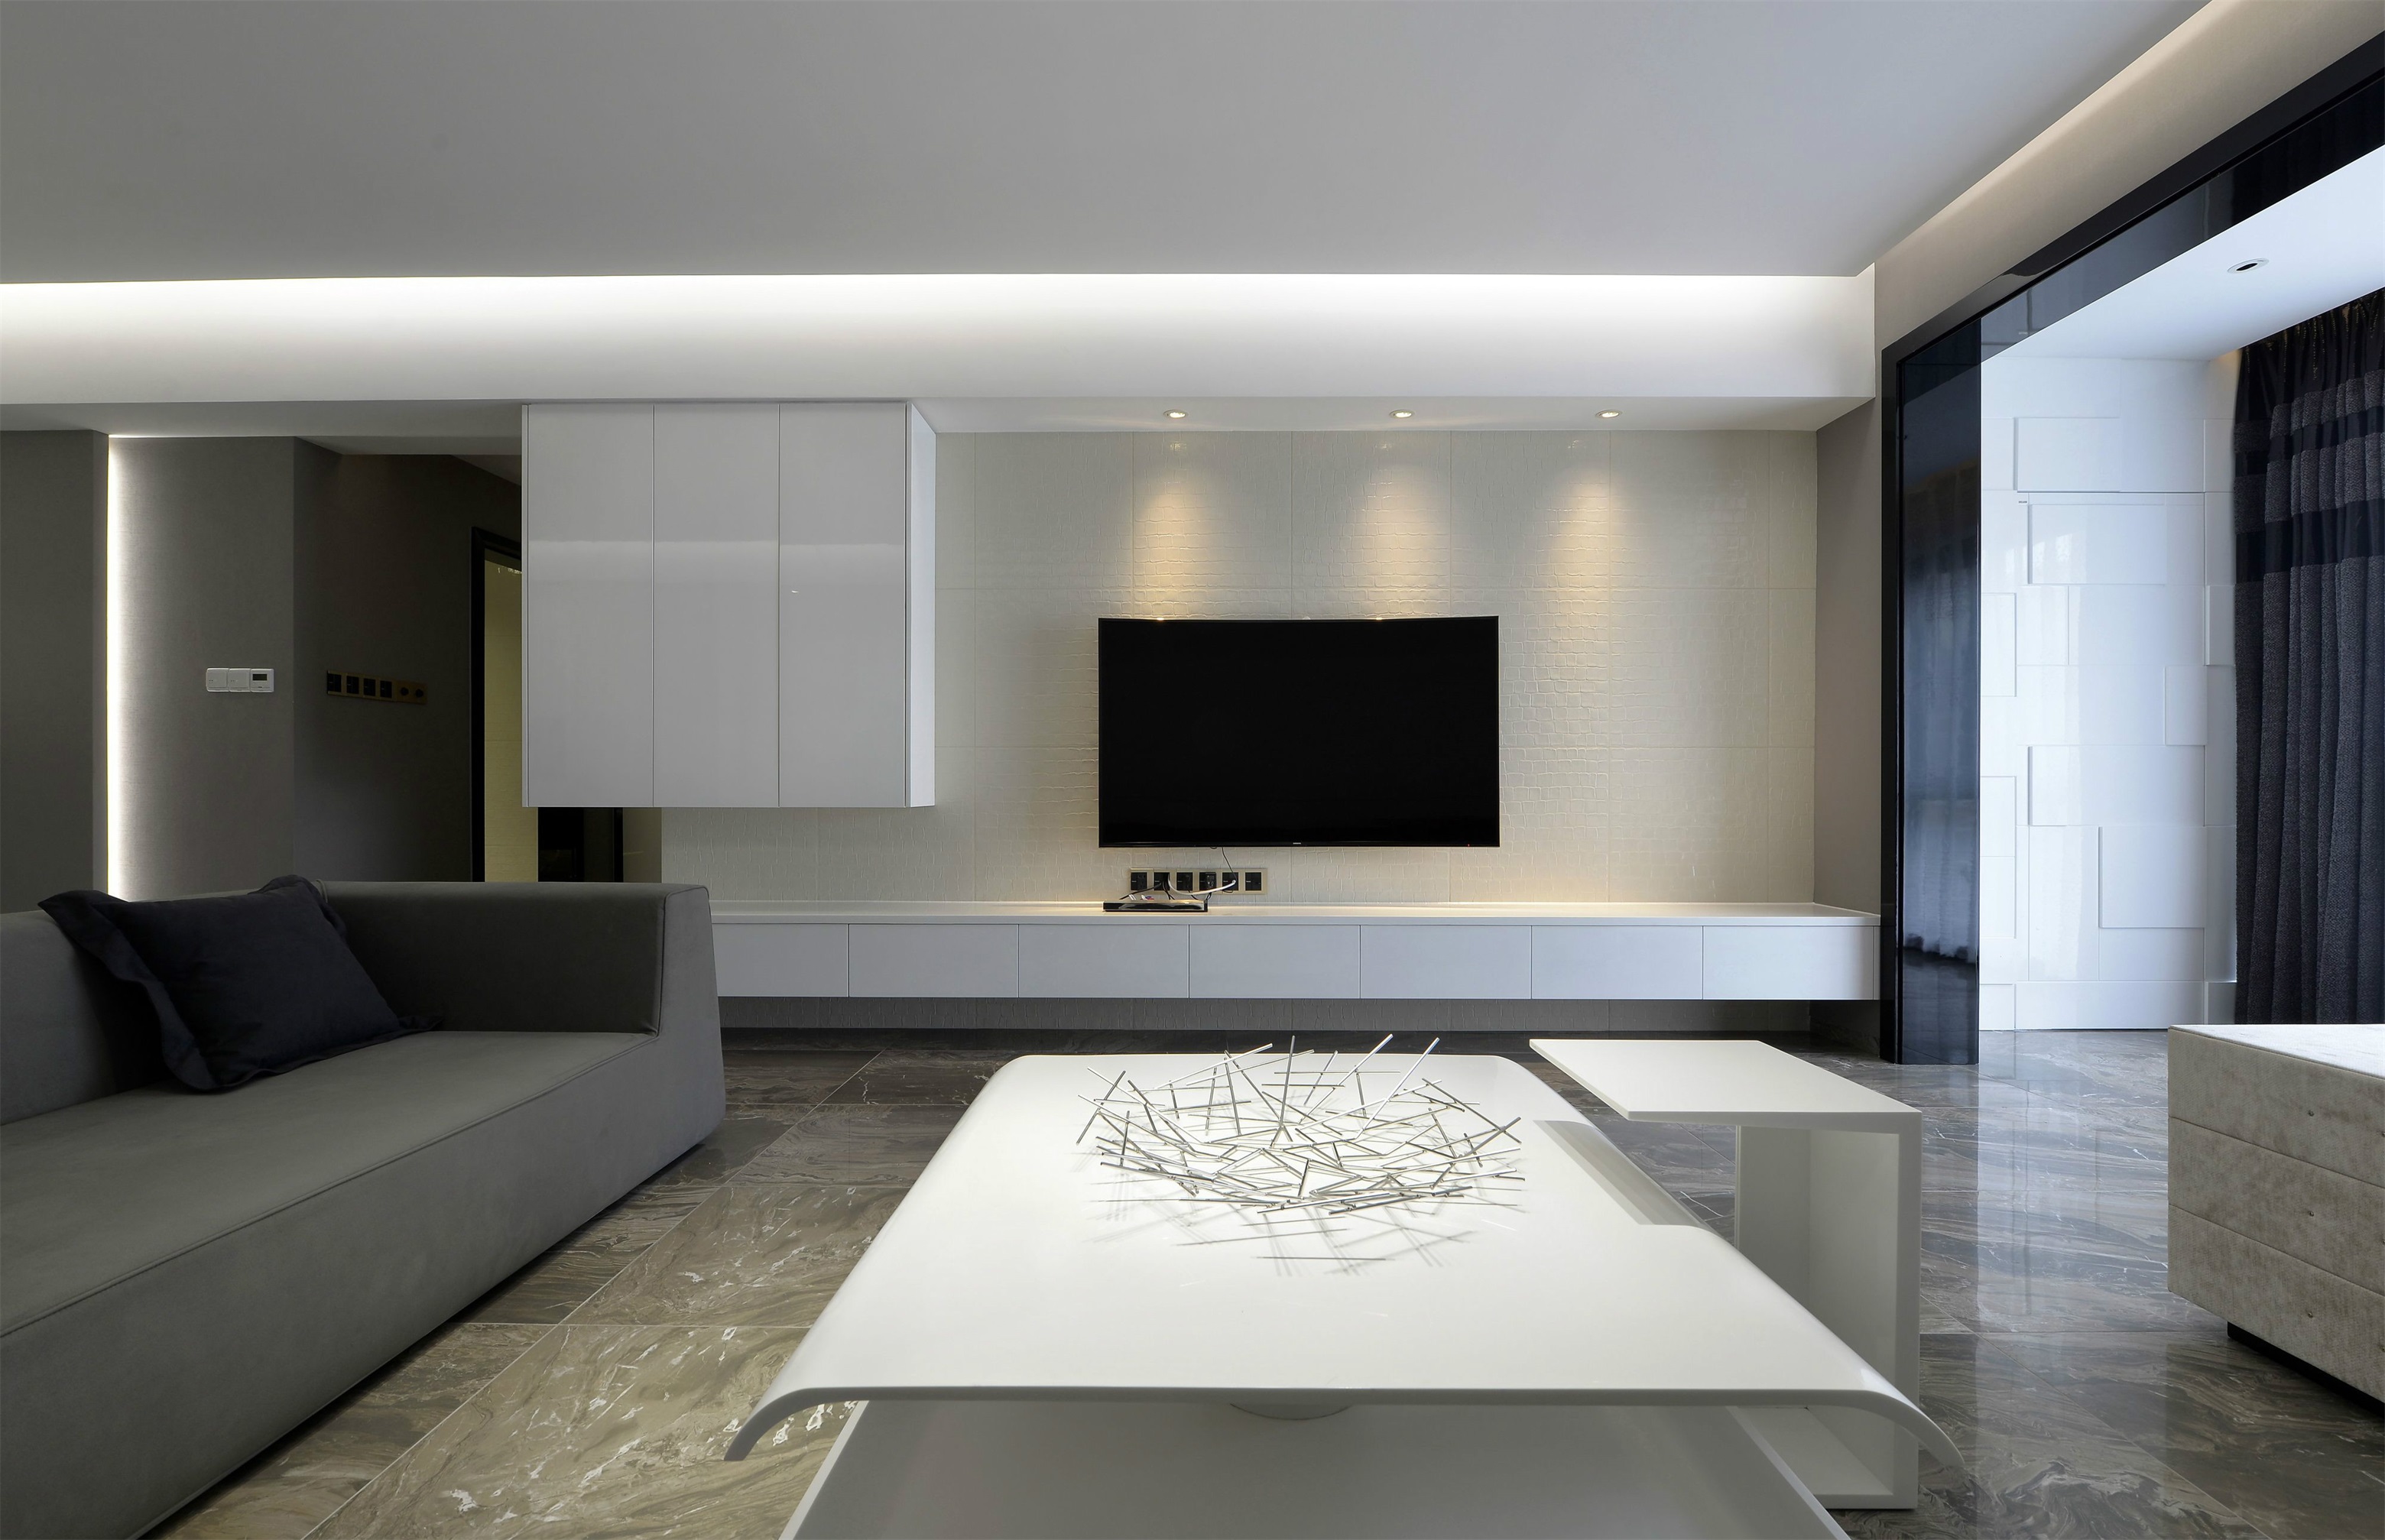 电视机背景墙设计简单,白色作为基底显得更为安静自然,让空间显得更加